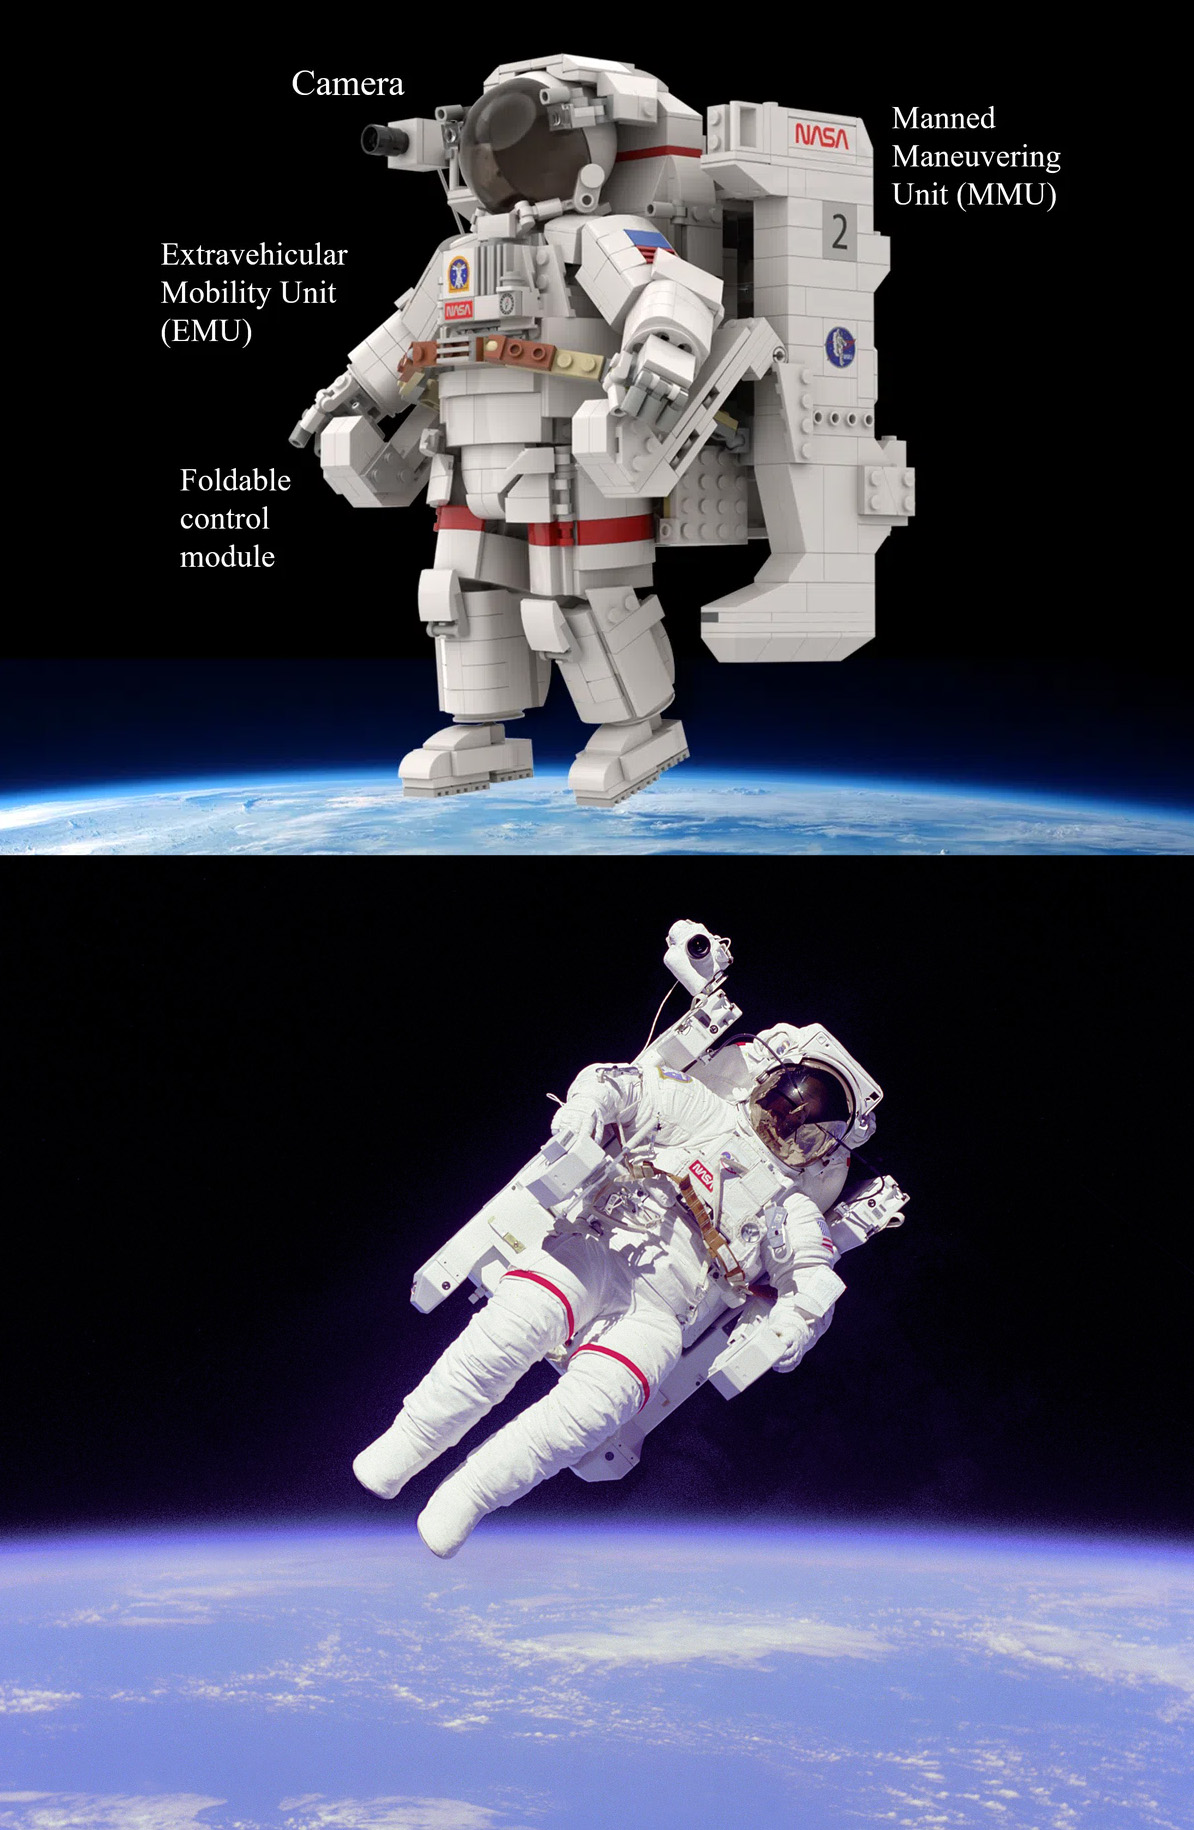 レゴ(R)アイデアで『レゴ(R)宇宙飛行士』が製品化レビュー進出！2021年第1回1万サポート獲得デザイン紹介